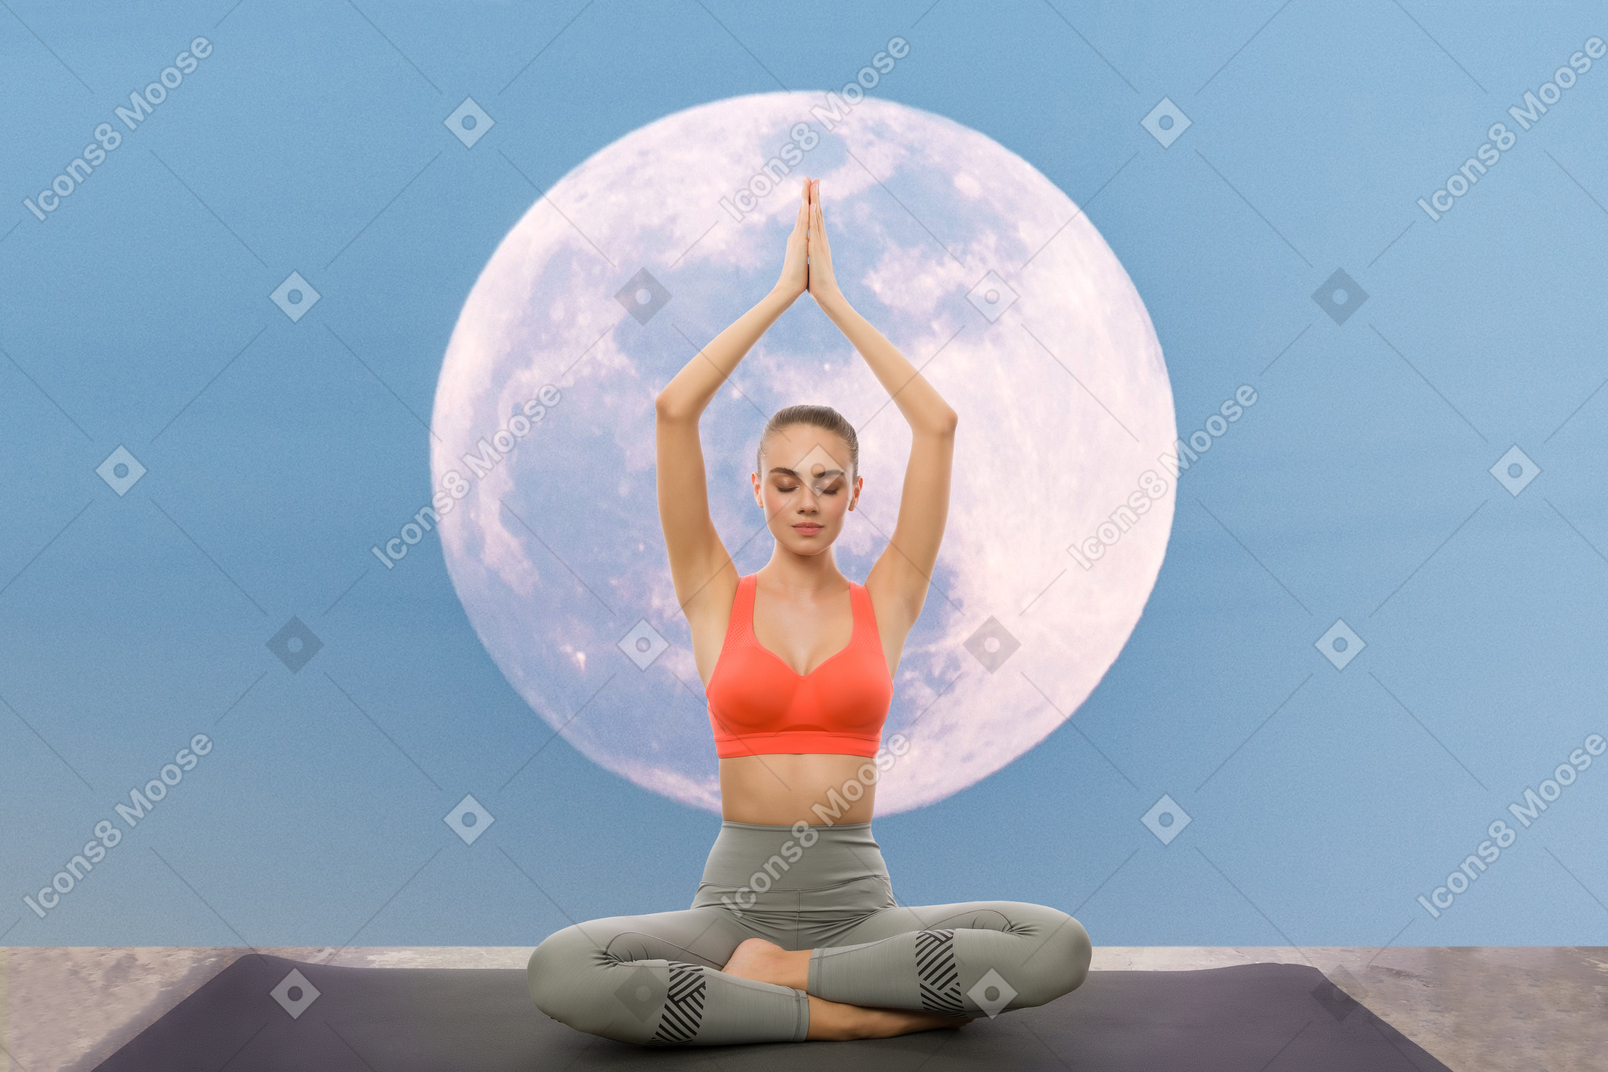 Full moon meditation